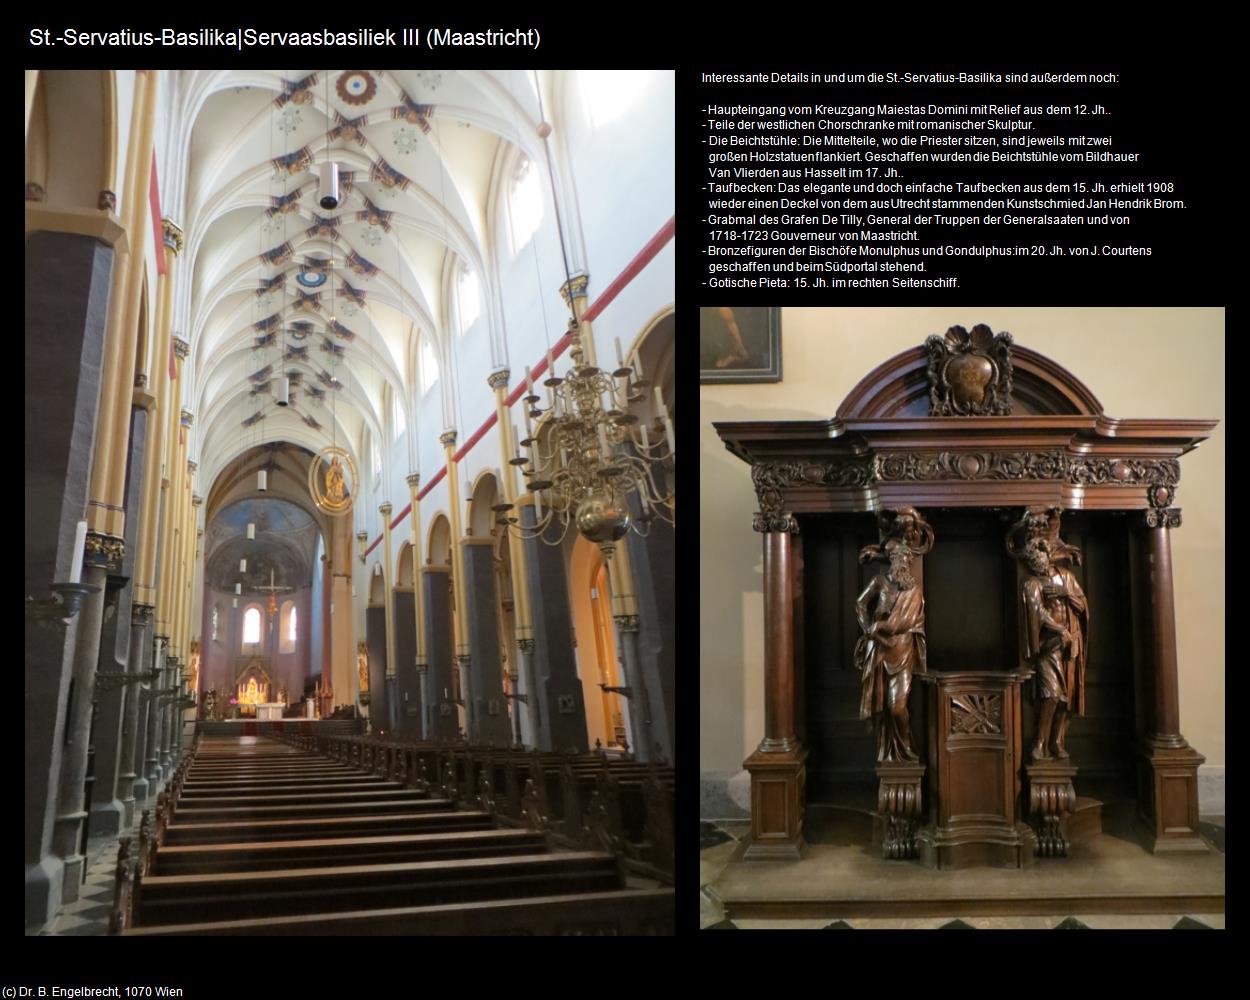 St.-Servatius-Basilika|Servaasbasiliek III (Maastricht) in Kulturatlas-NIEDERLANDE